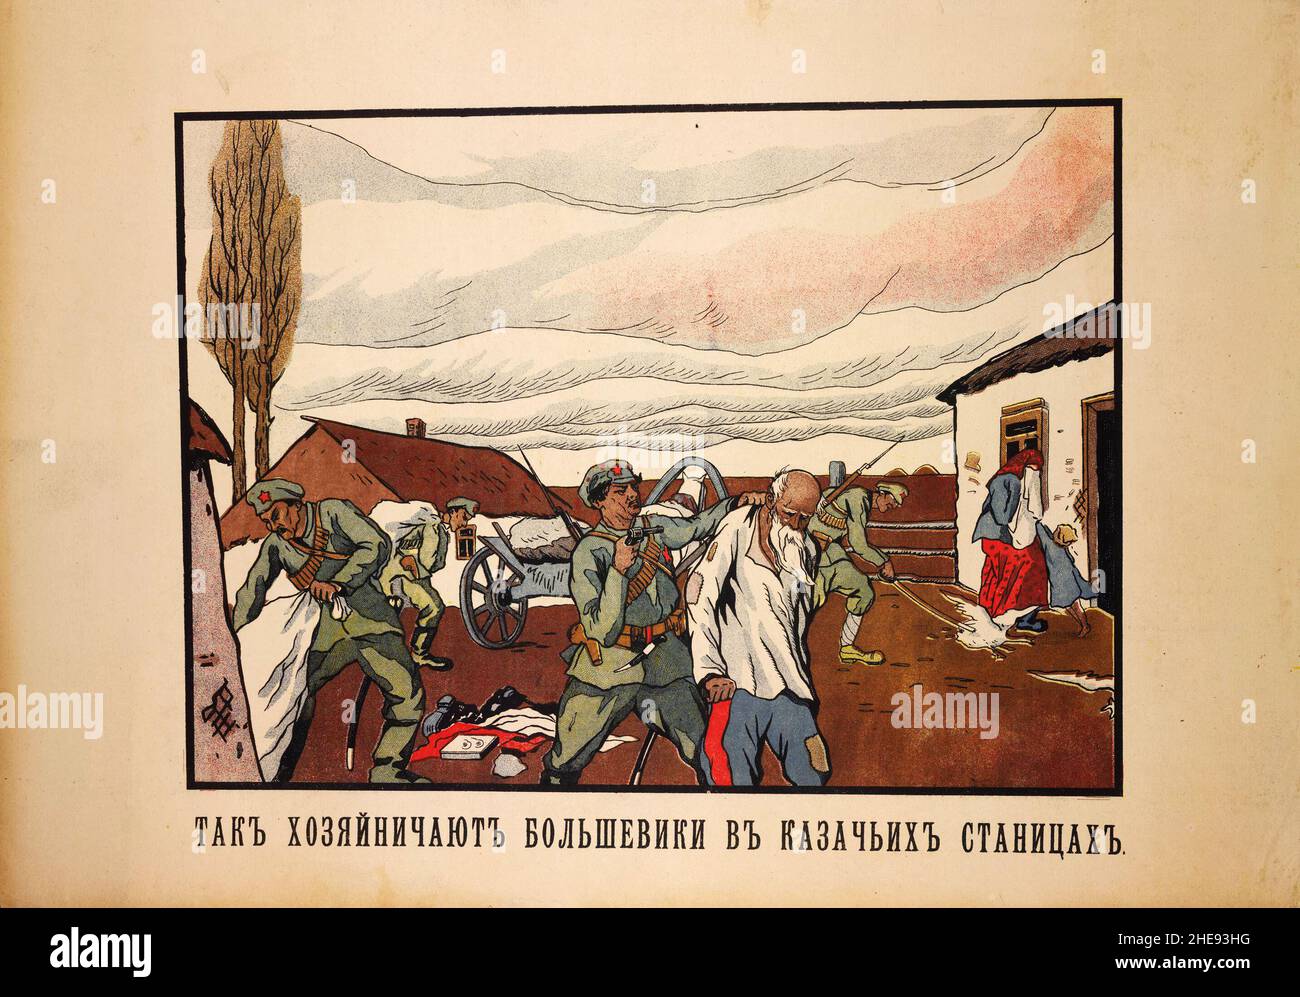 Une affiche de propagande russe blanche montrant des soldats de l'Armée rouge détruisant un village cosaque avec la légende « Comment les bolcheviks se sentent chez eux dans les villages cosaques » Banque D'Images